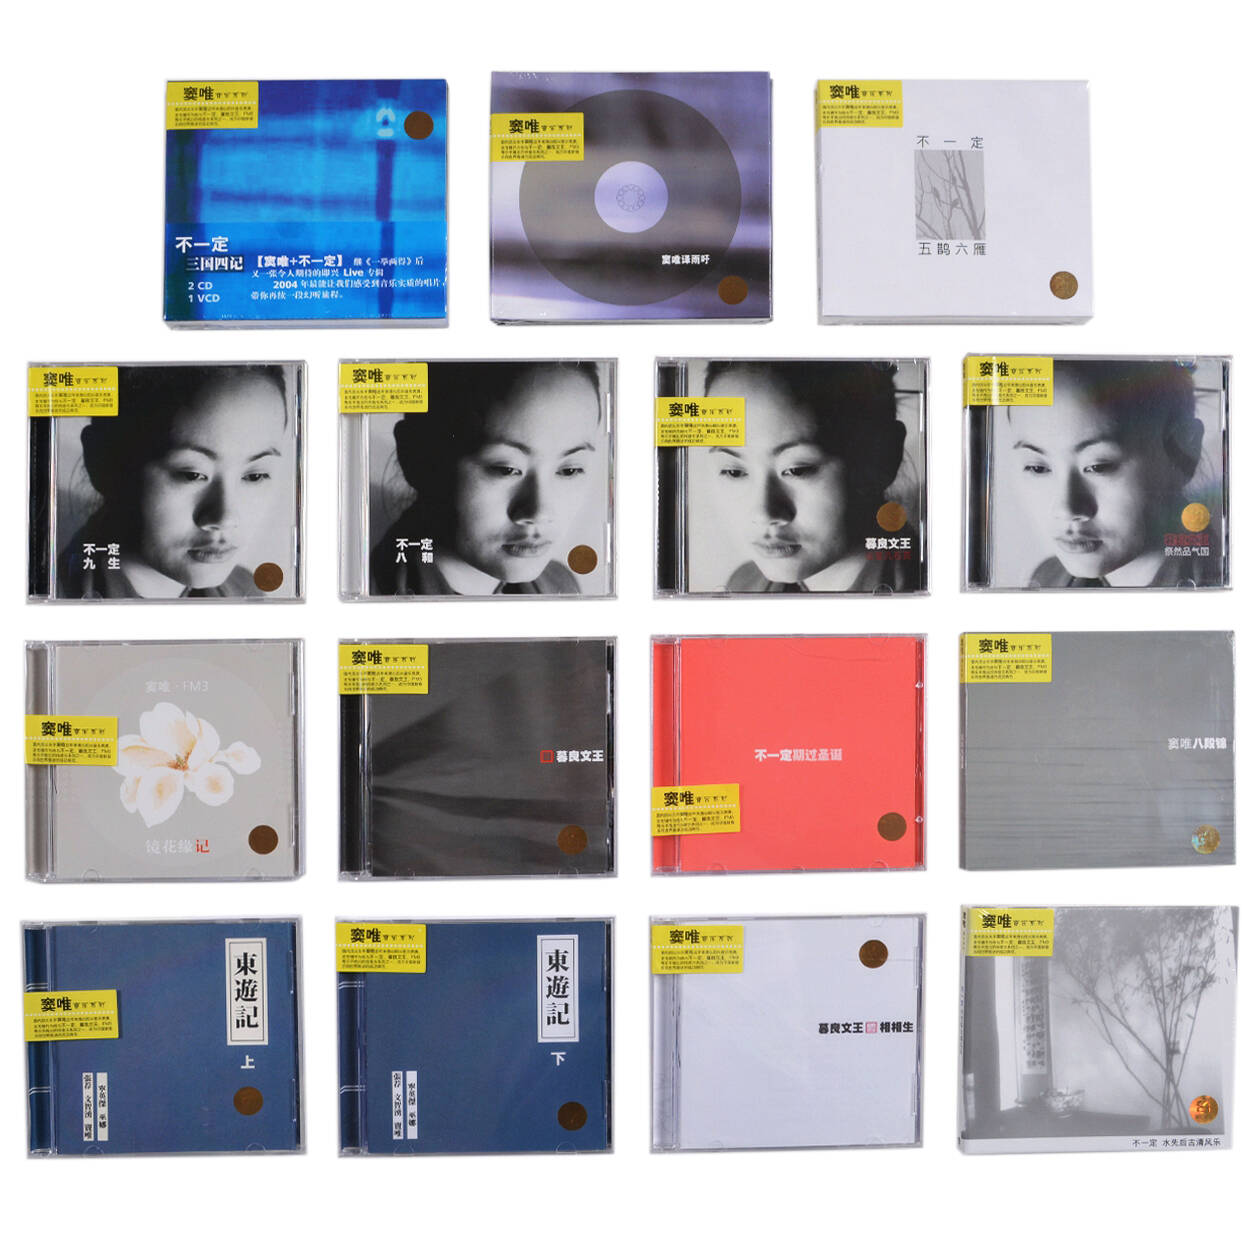 正版窦唯专辑套装15张 雨吁 八段锦 暮良文王 上海音像17CD+1VCD